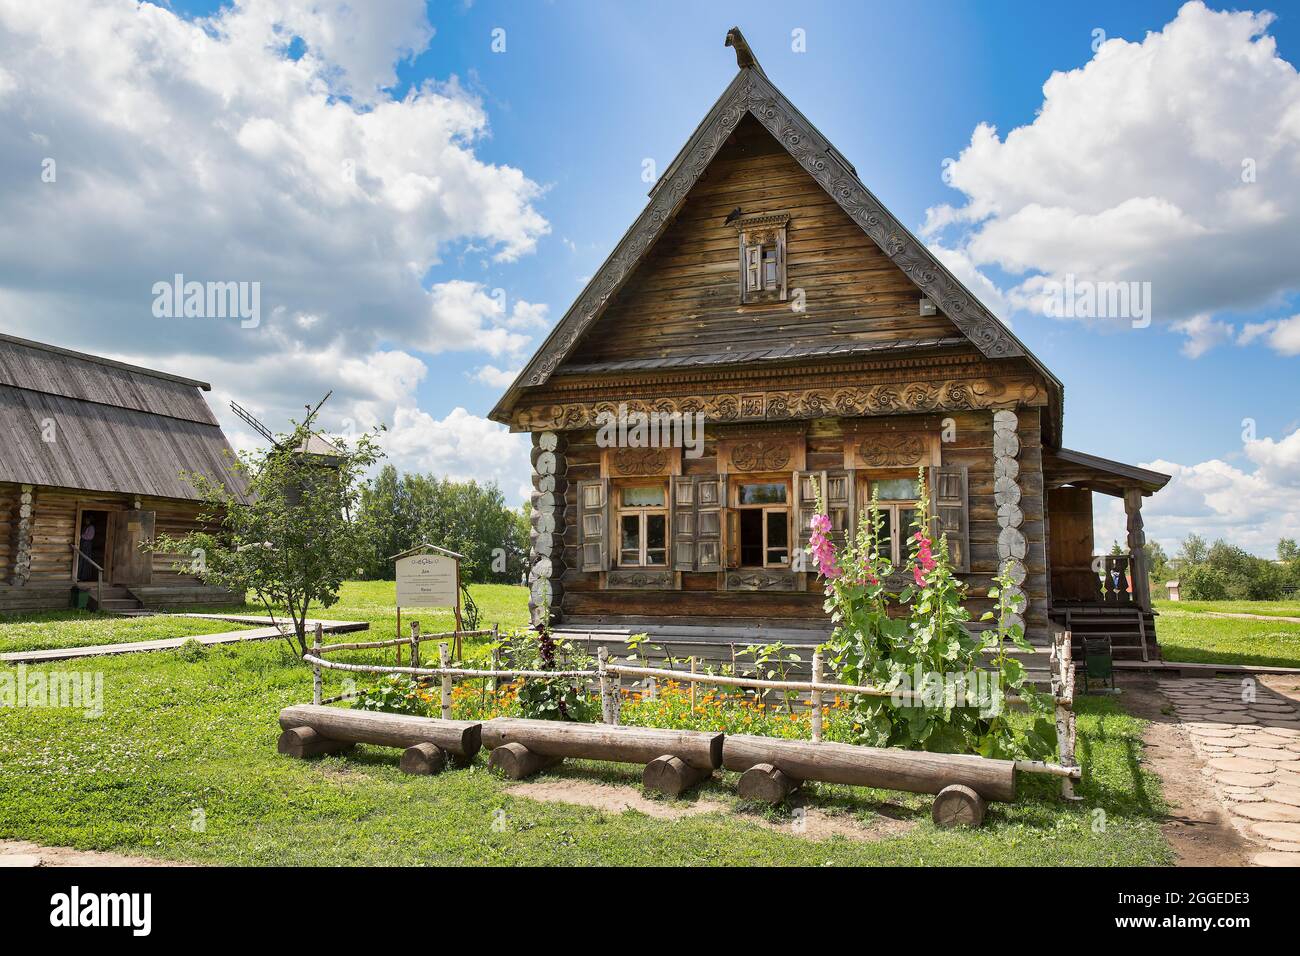 Musée de l'architecture en bois, Suzdal, Vladimir Oblast, Russie Banque D'Images